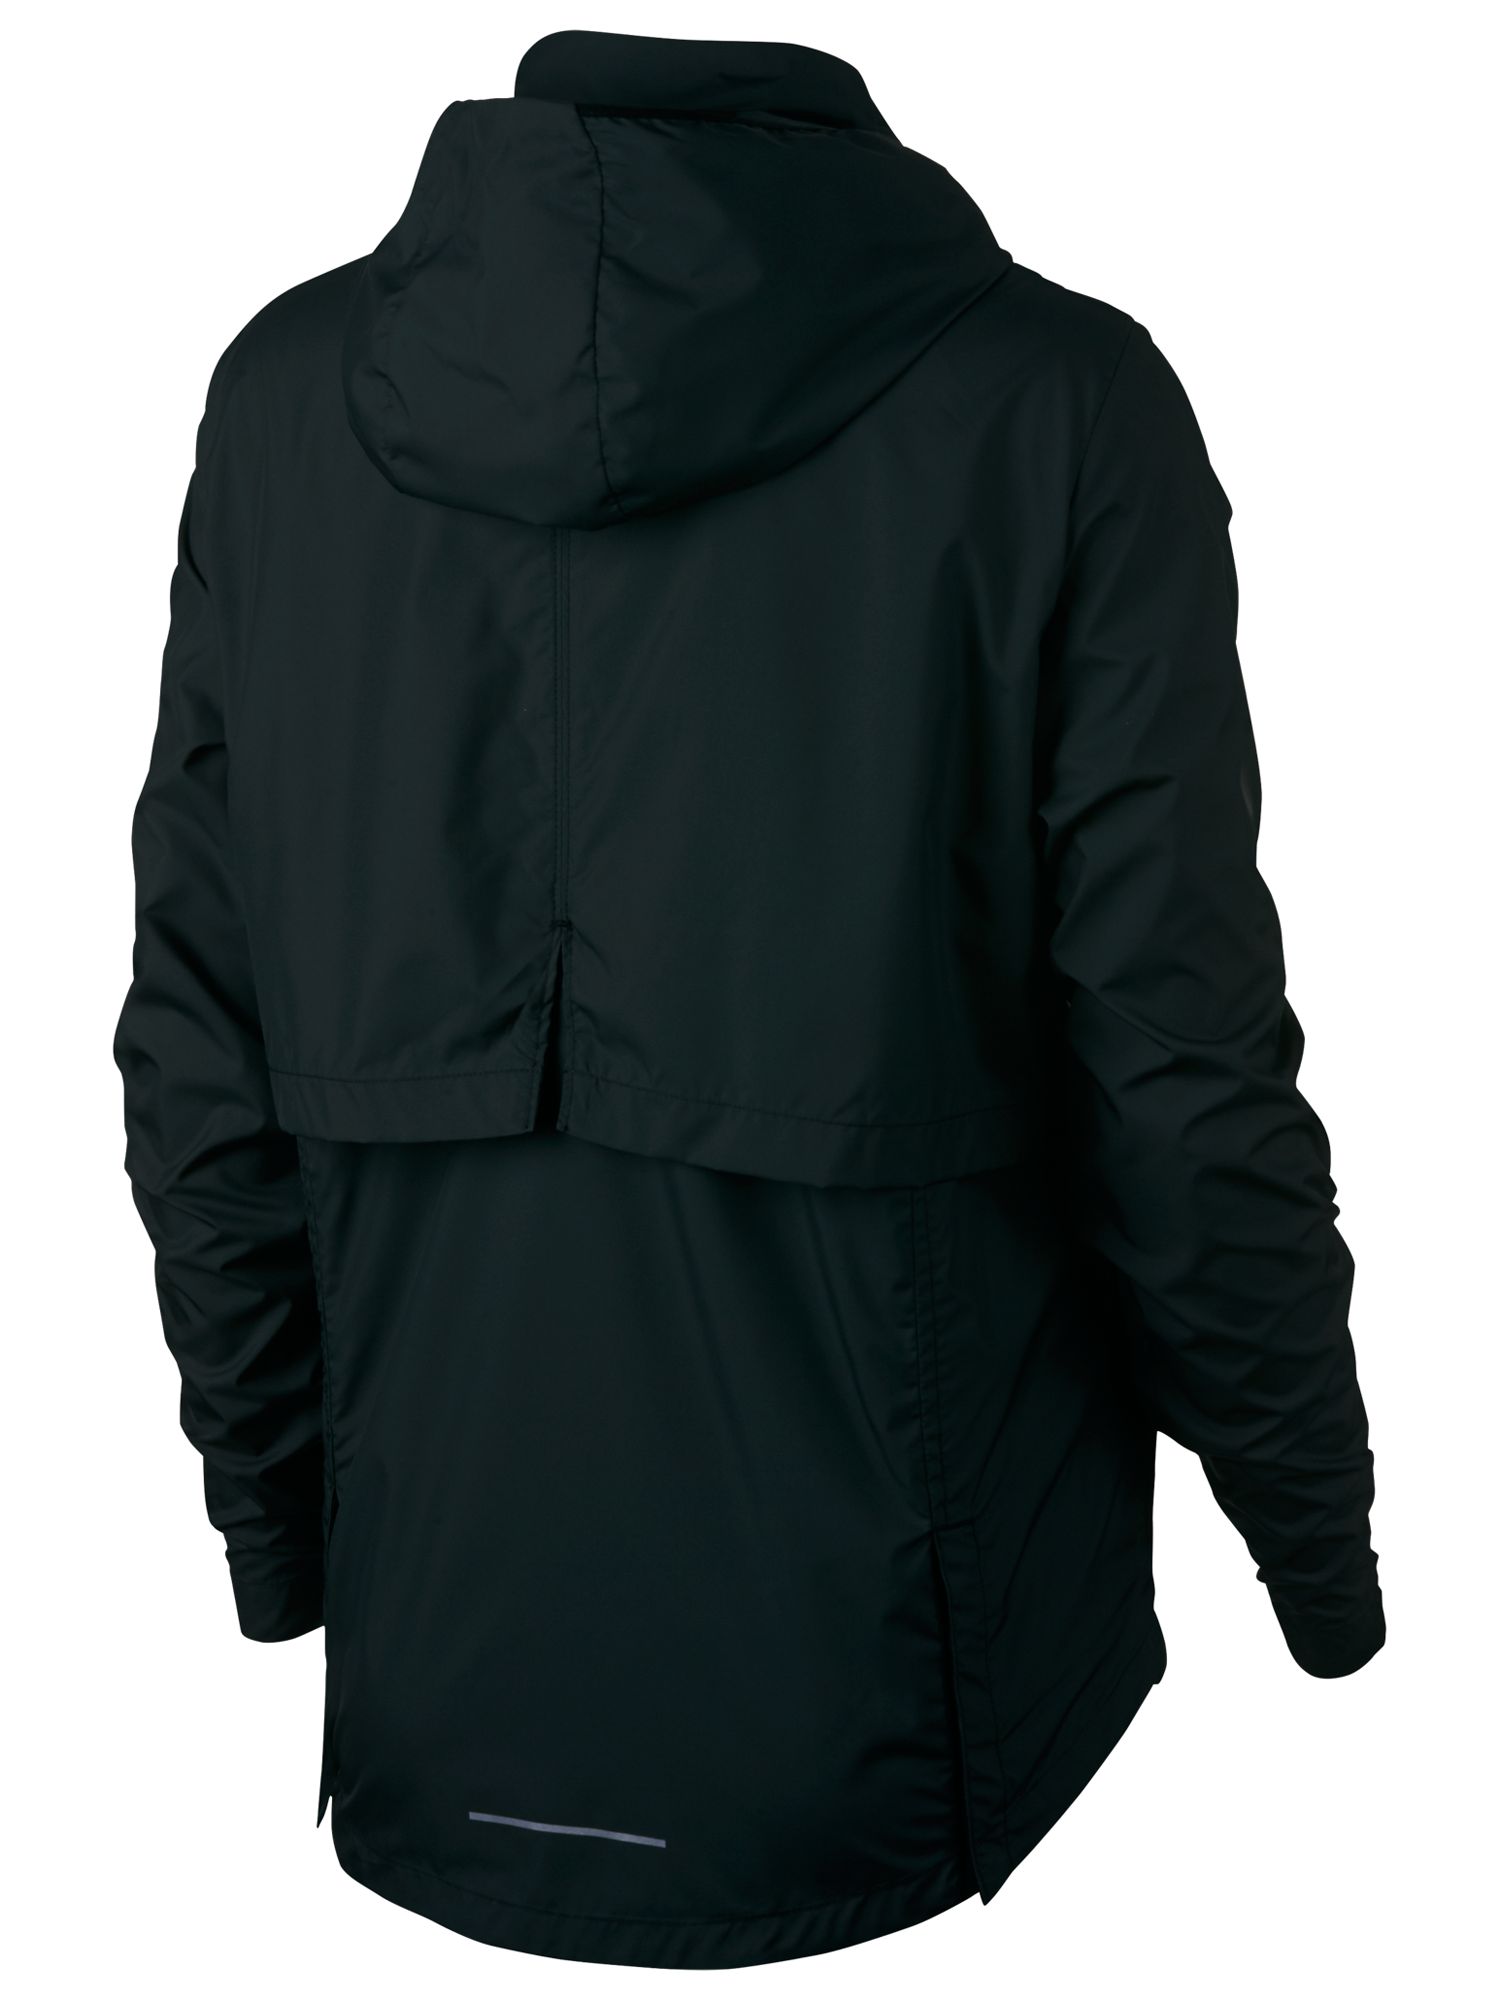 nike running essentials jackets in black